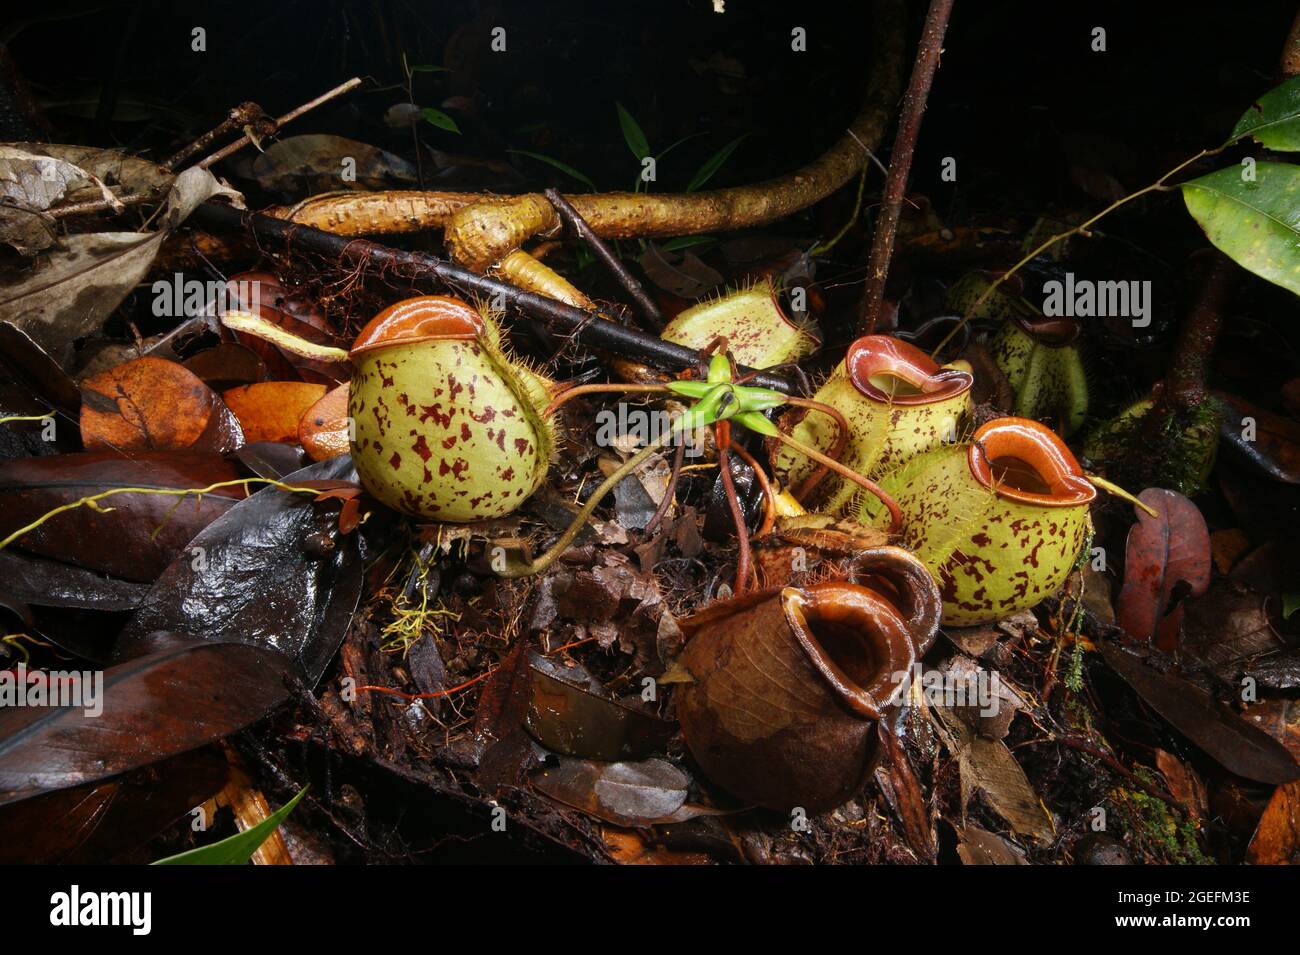 Caraffe dell'impianto di carnivoro caraffa Nepenthes ampullaria, Sarawak, Borneo, vista laterale Foto Stock